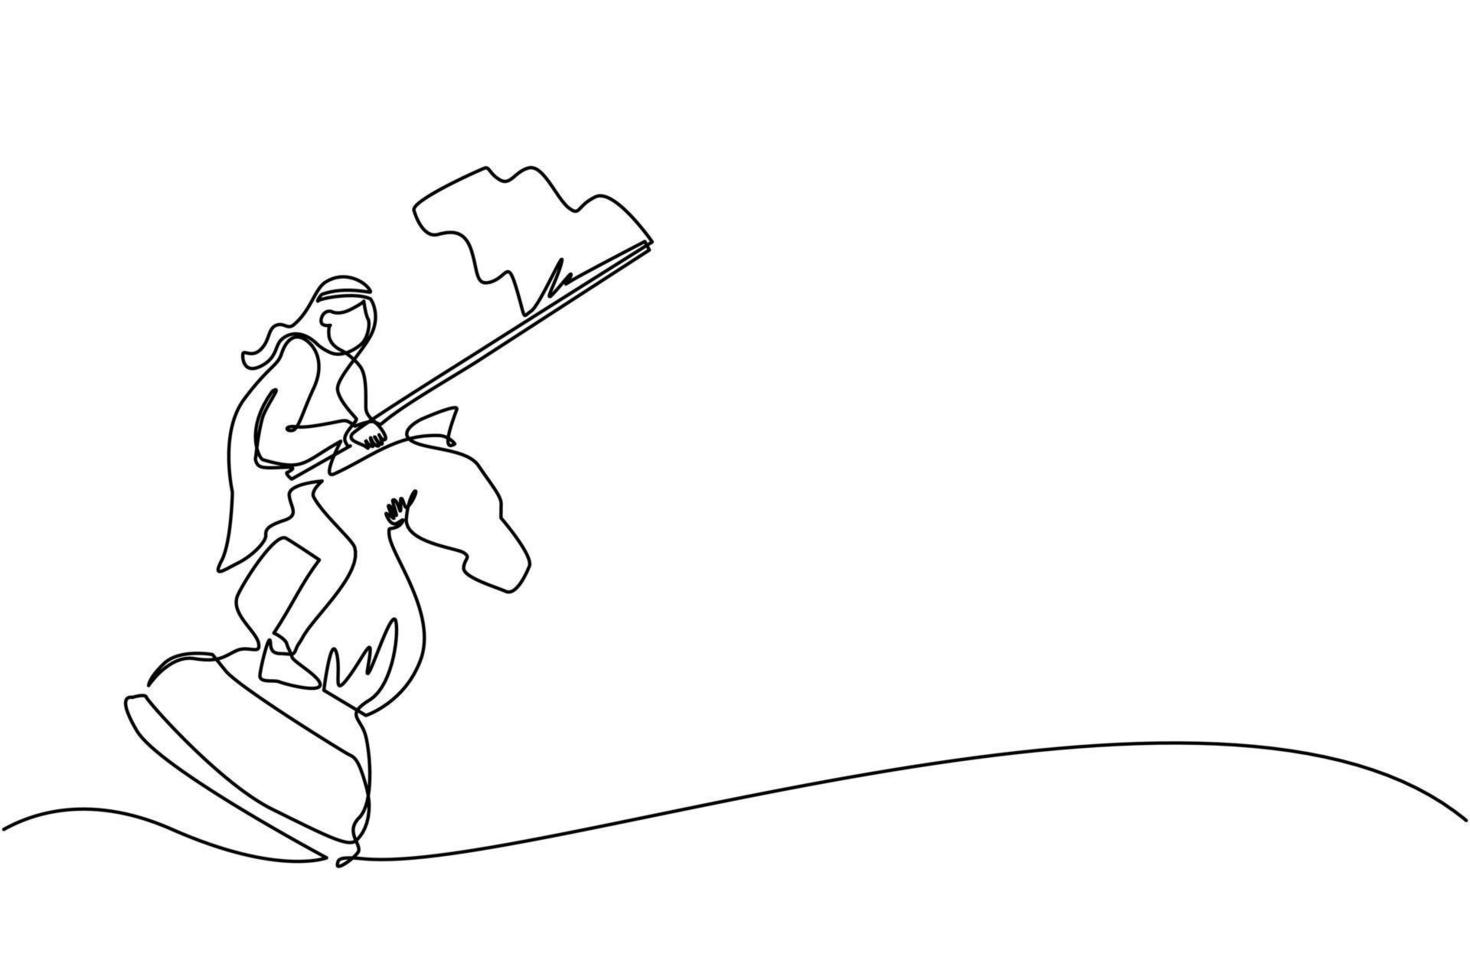 dibujo continuo de una línea hombre de negocios árabe montando un gran caballo de ajedrez y sosteniendo bandera, estrategia, movimiento competitivo y estratégico en el concepto de negocio. ilustración de vector de diseño de dibujo de una sola línea